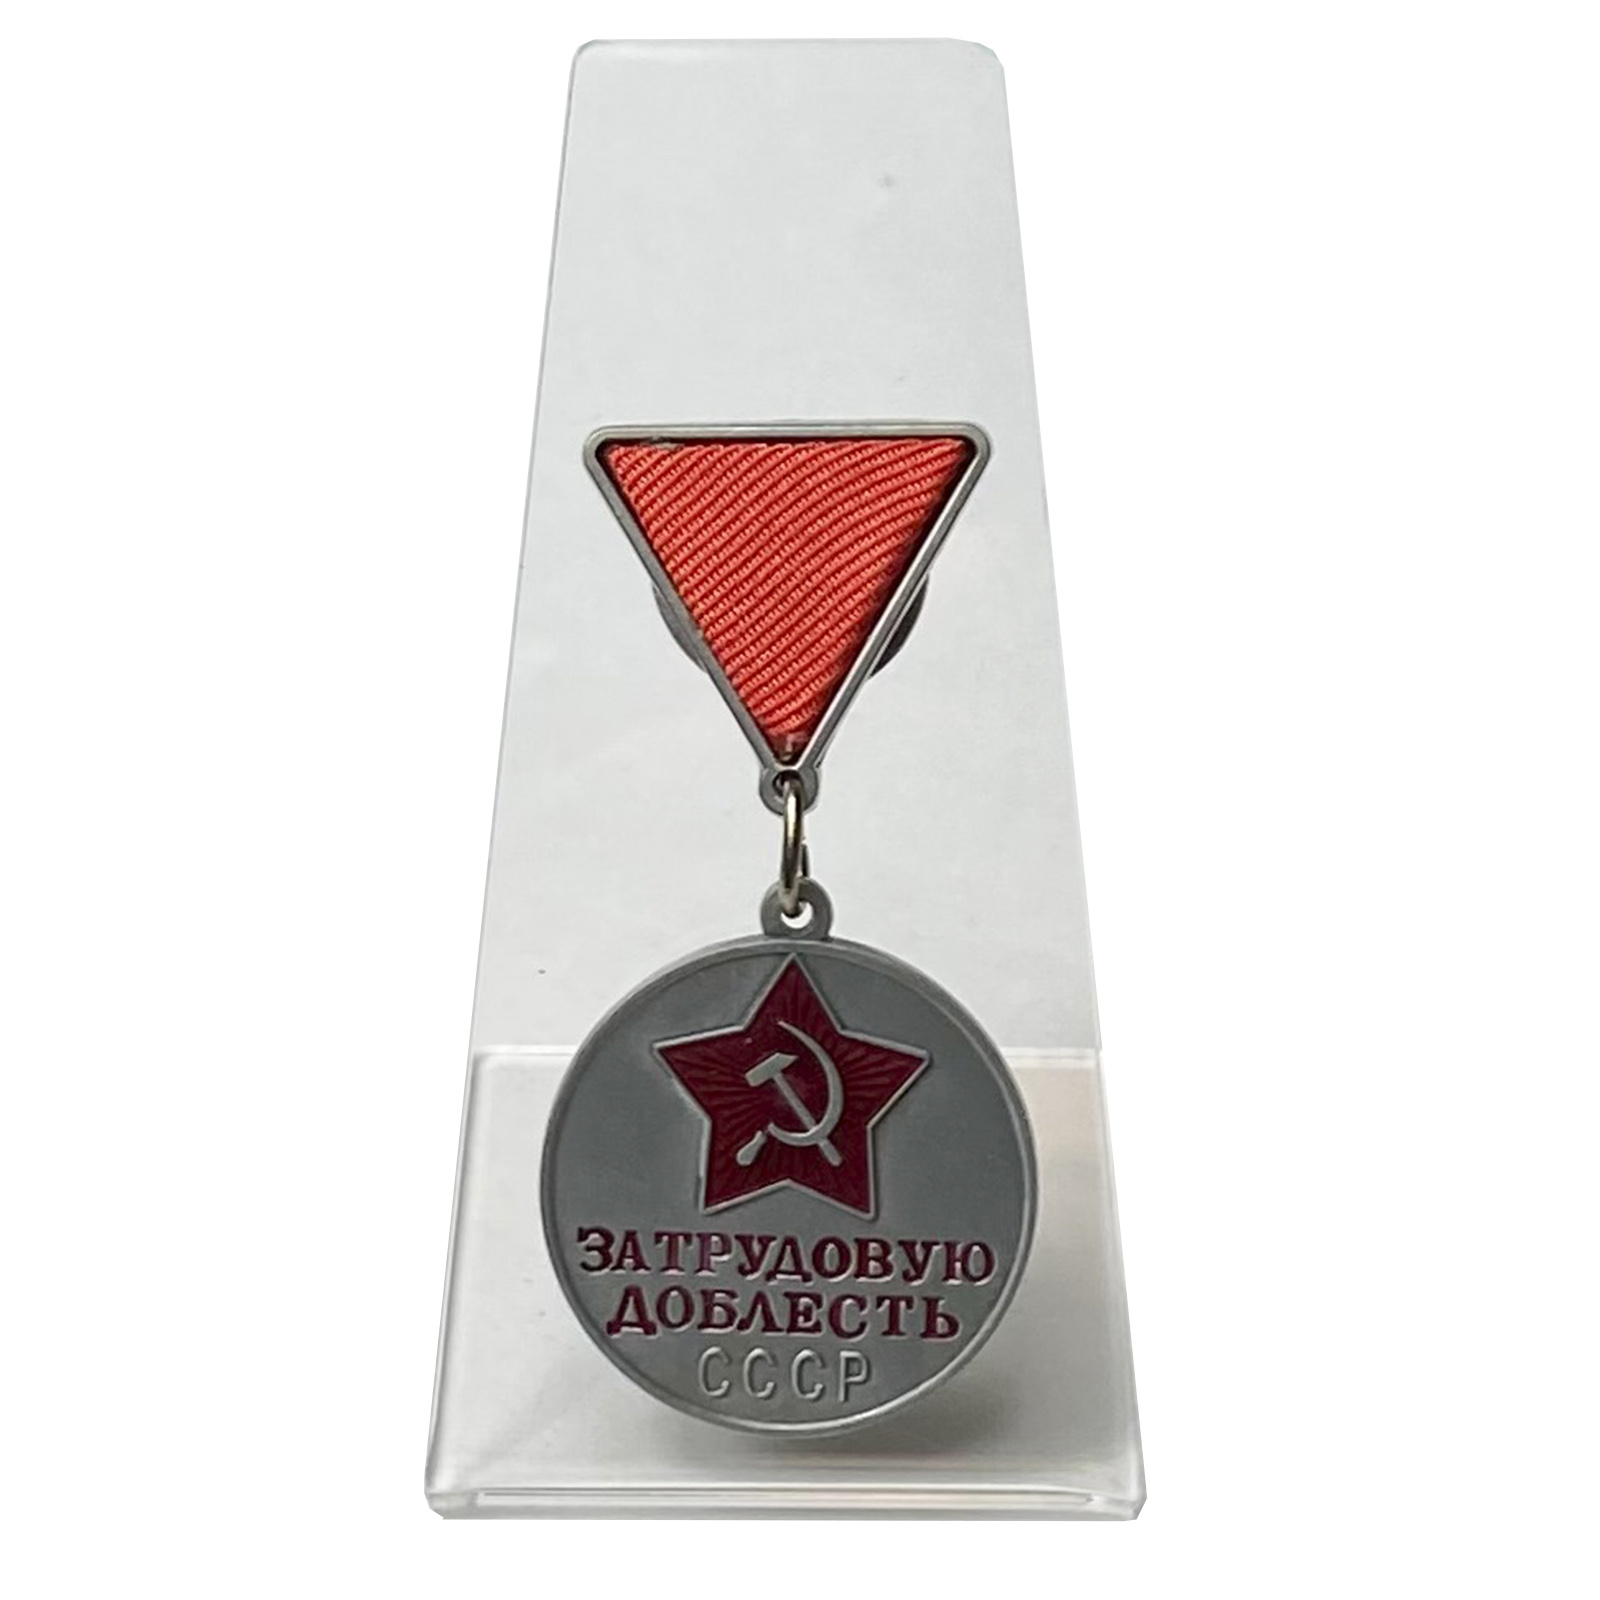 Медаль "За трудовую доблесть" СССР на подставке